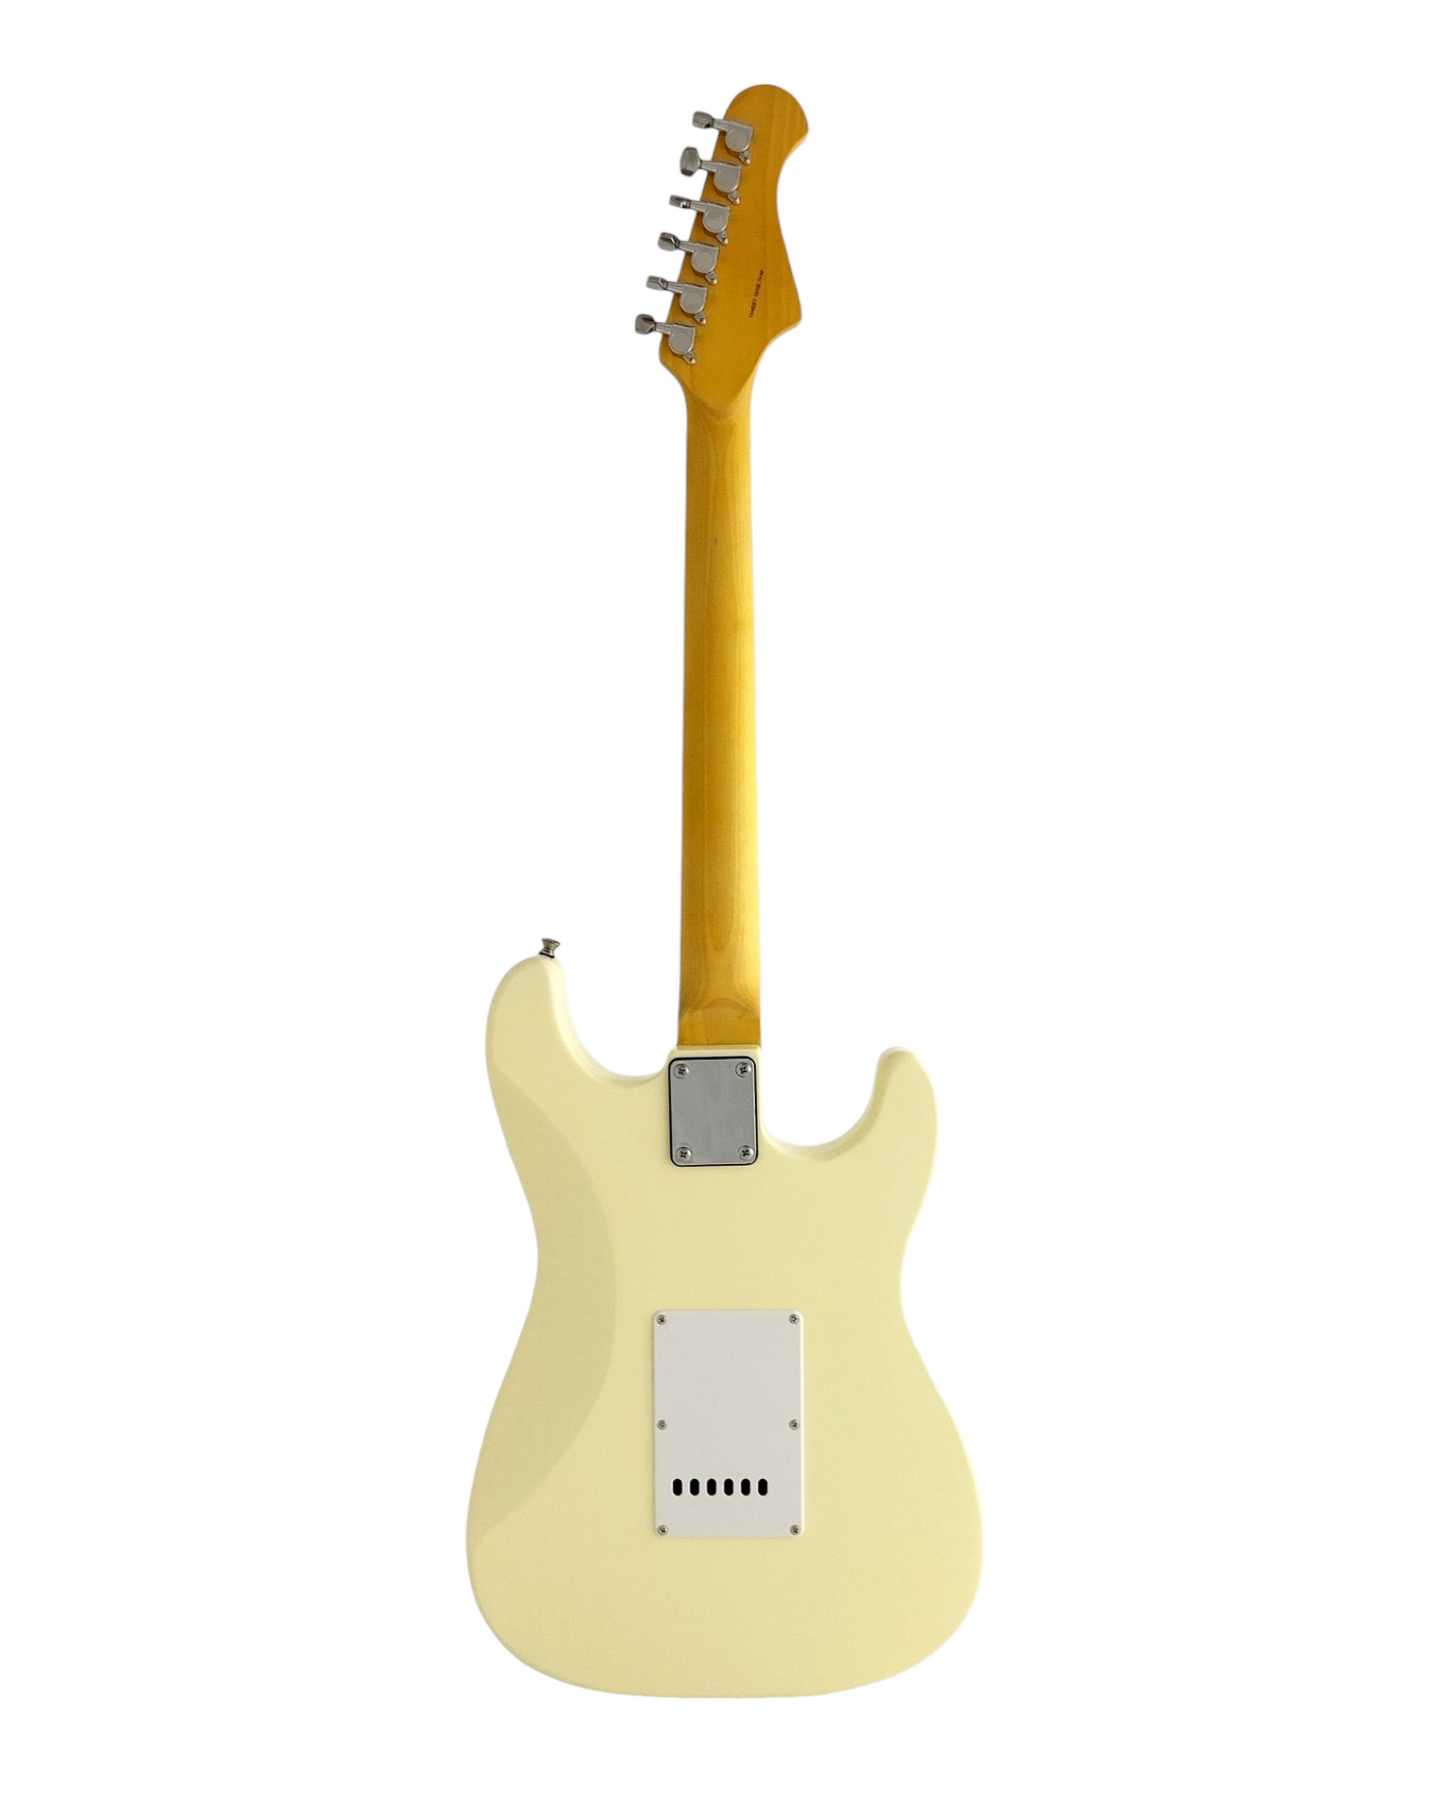 Haze Left Handed SSS Maple Neck HST Electric Guitar - Ivory 11HSST1910LIVM